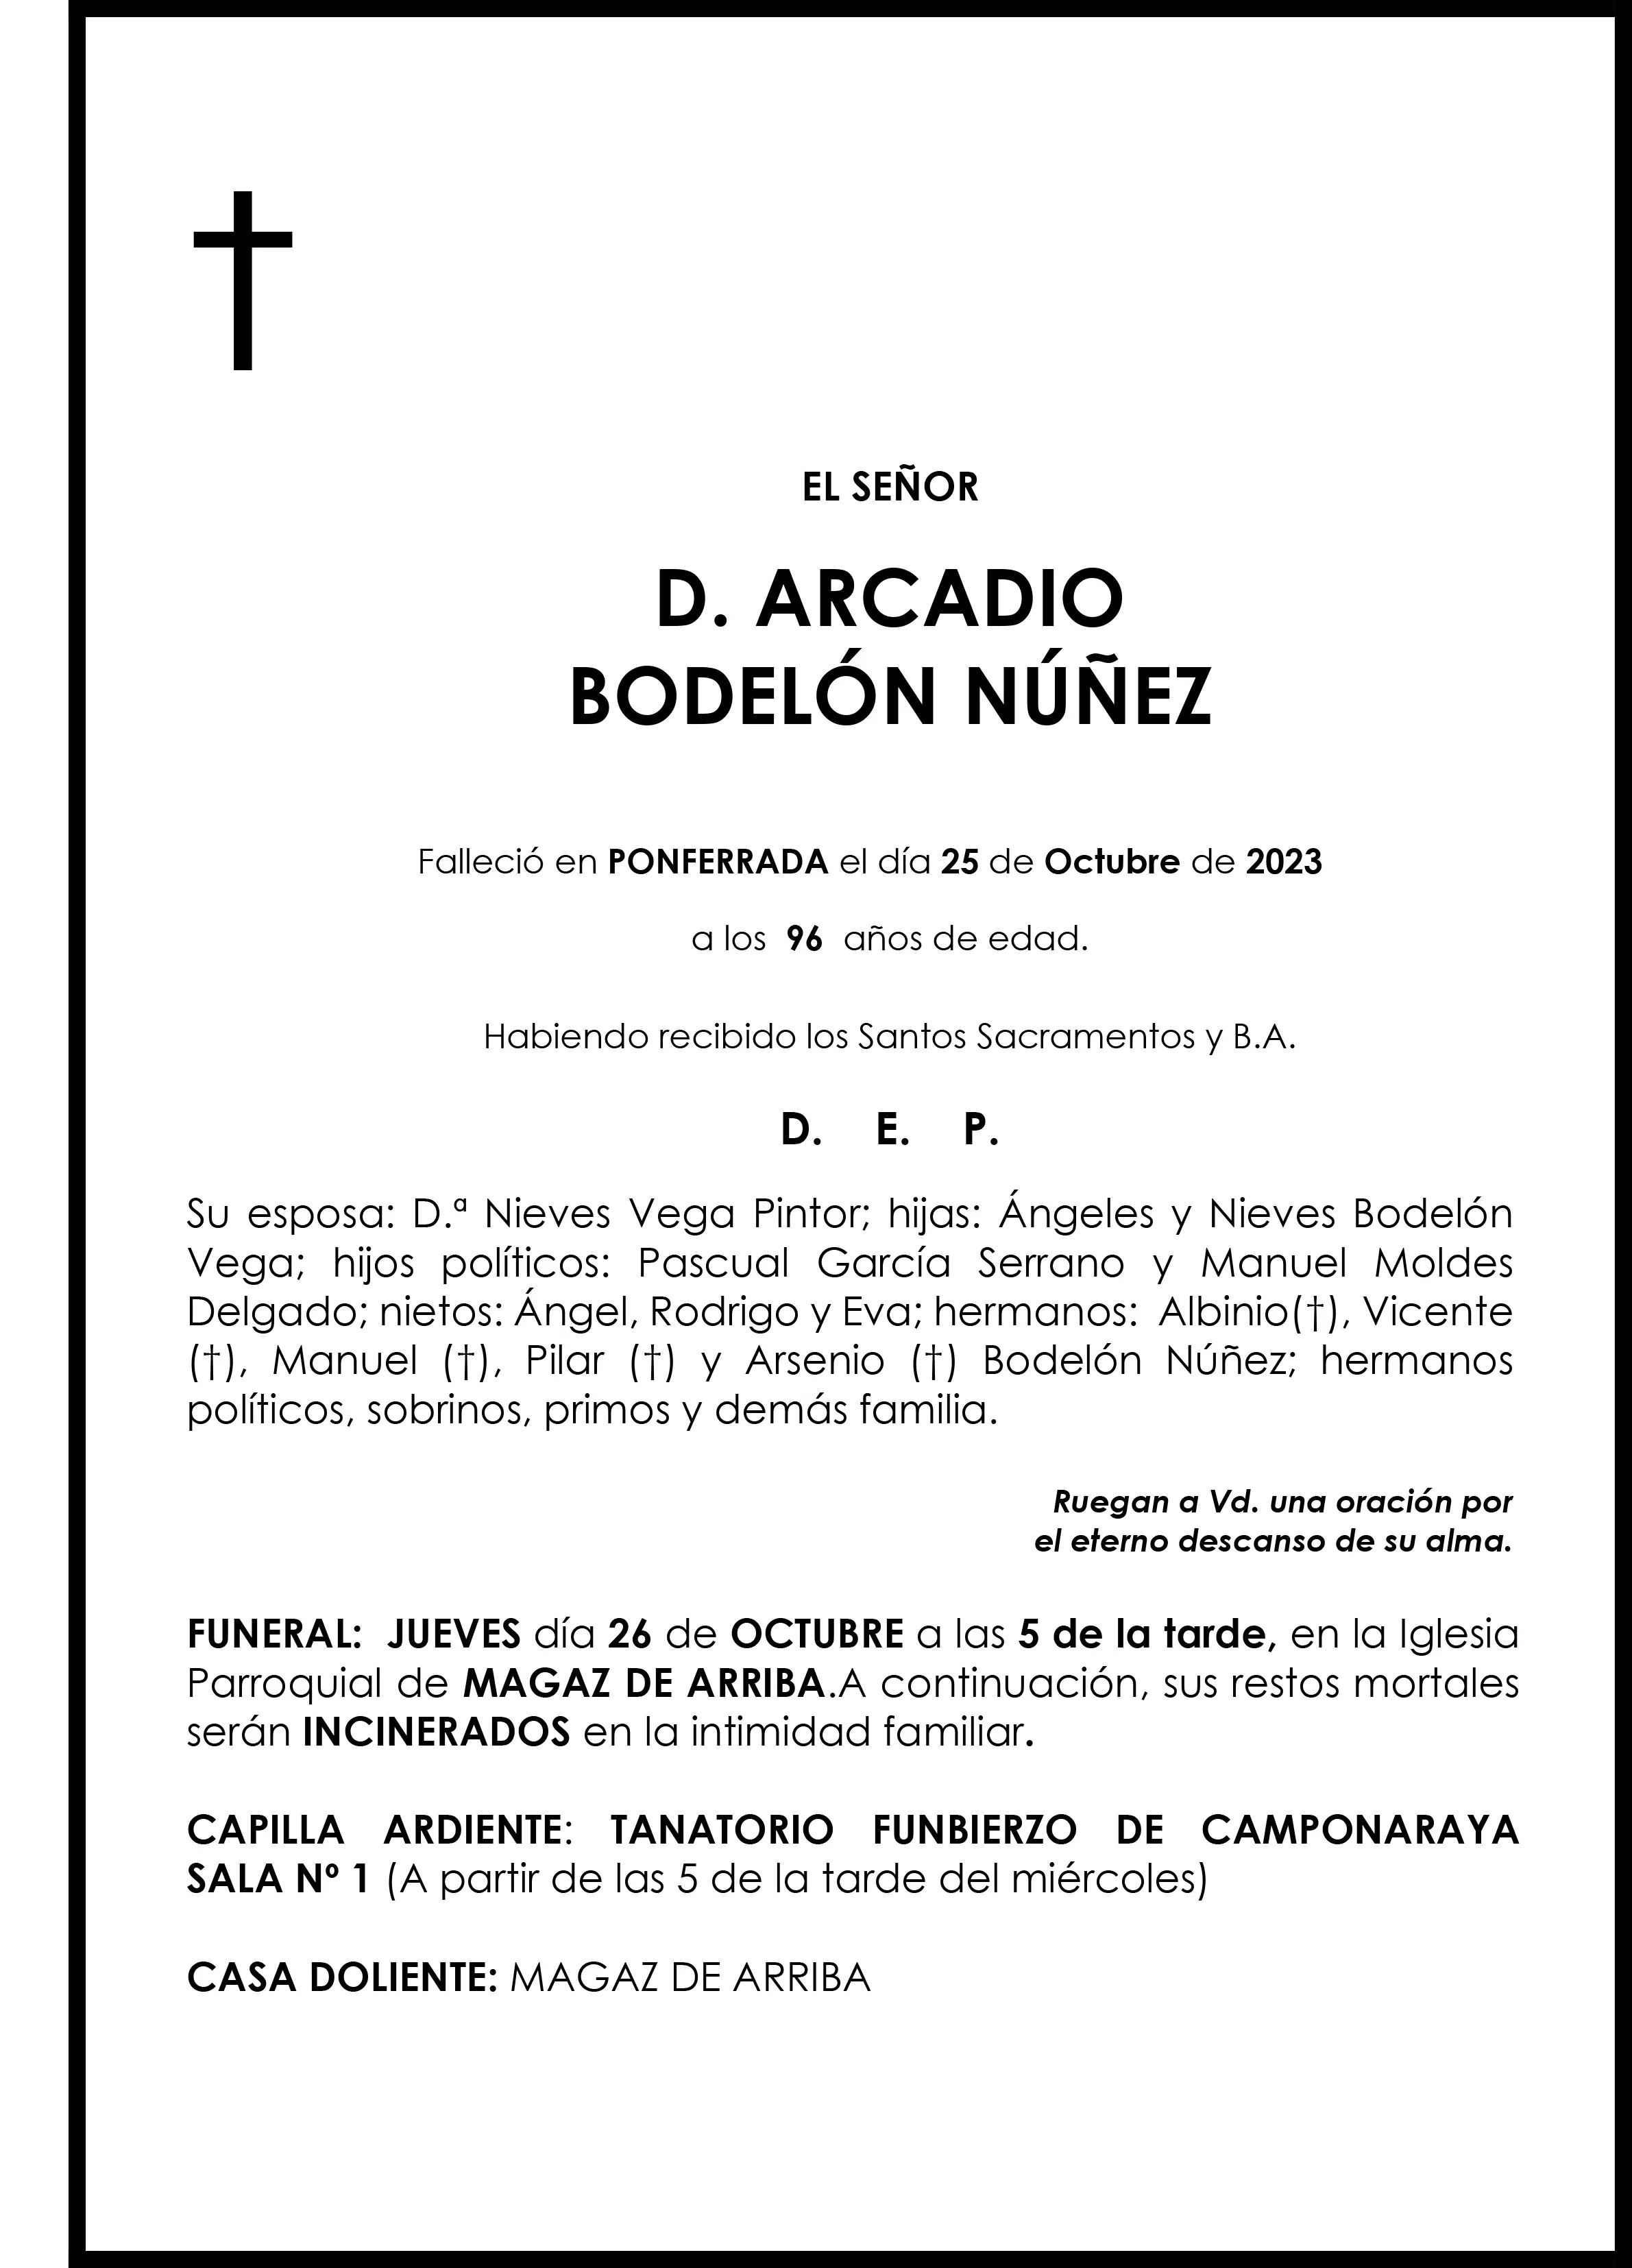 ARCADIO BODELON NUÑEZ